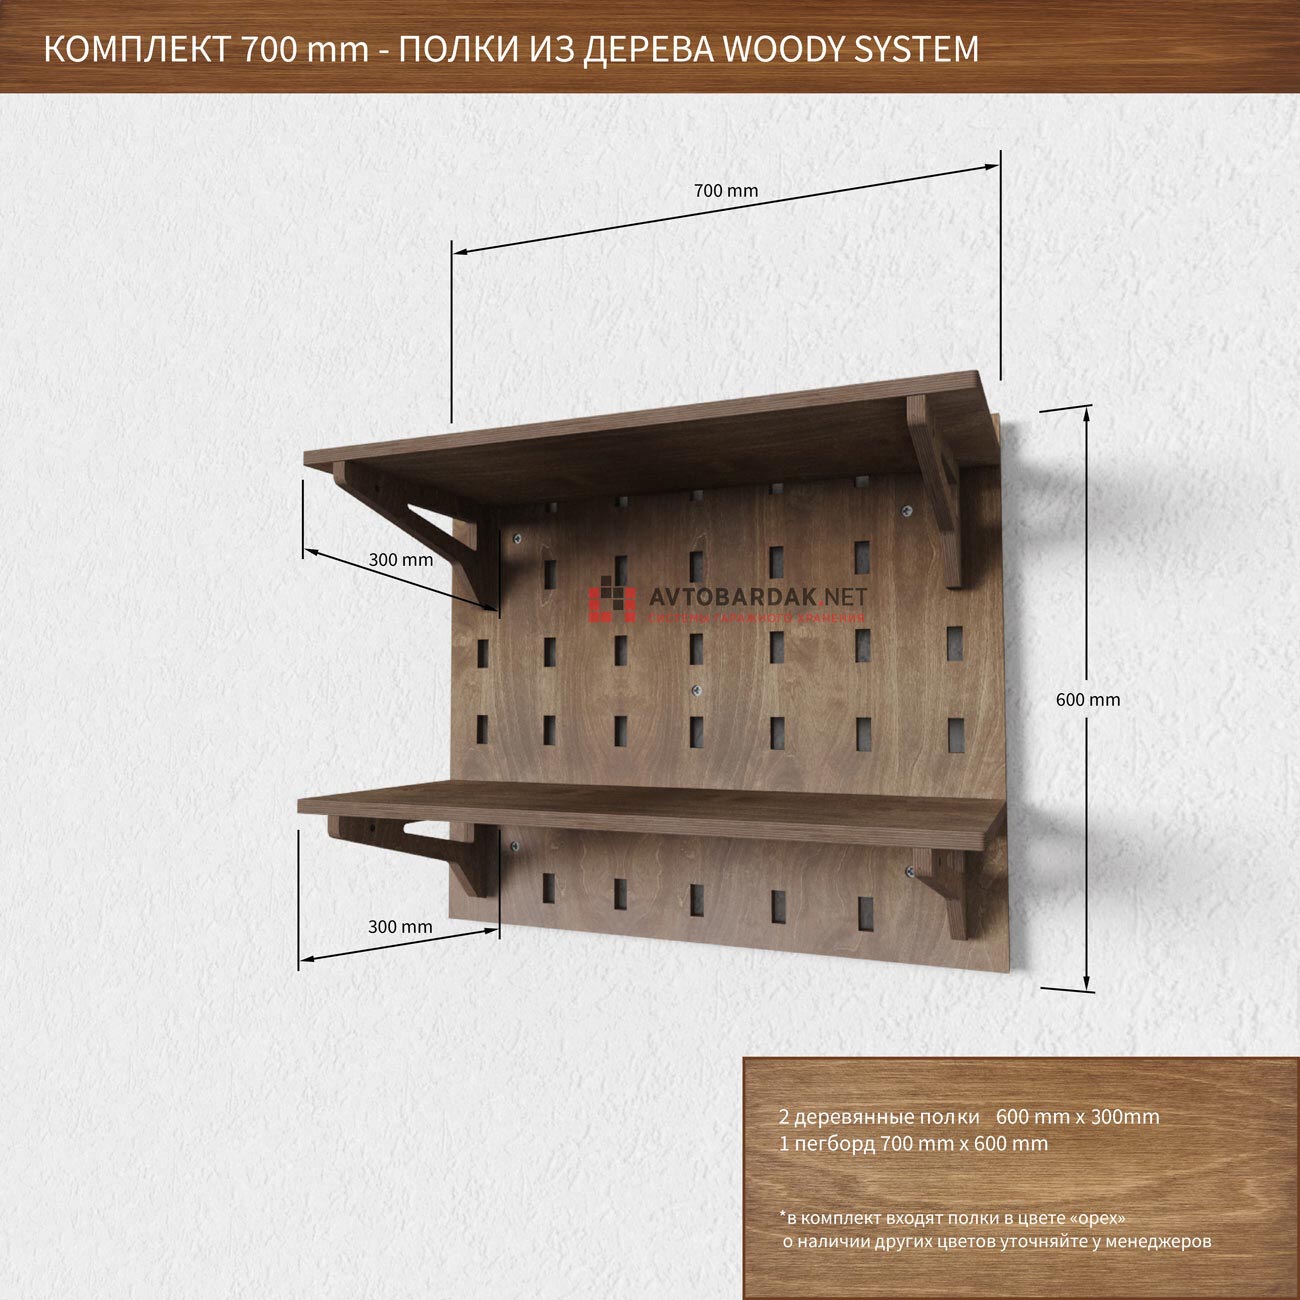 Как сделать деревянный шкаф своими руками из доски, реек или б�руса: фото изделий